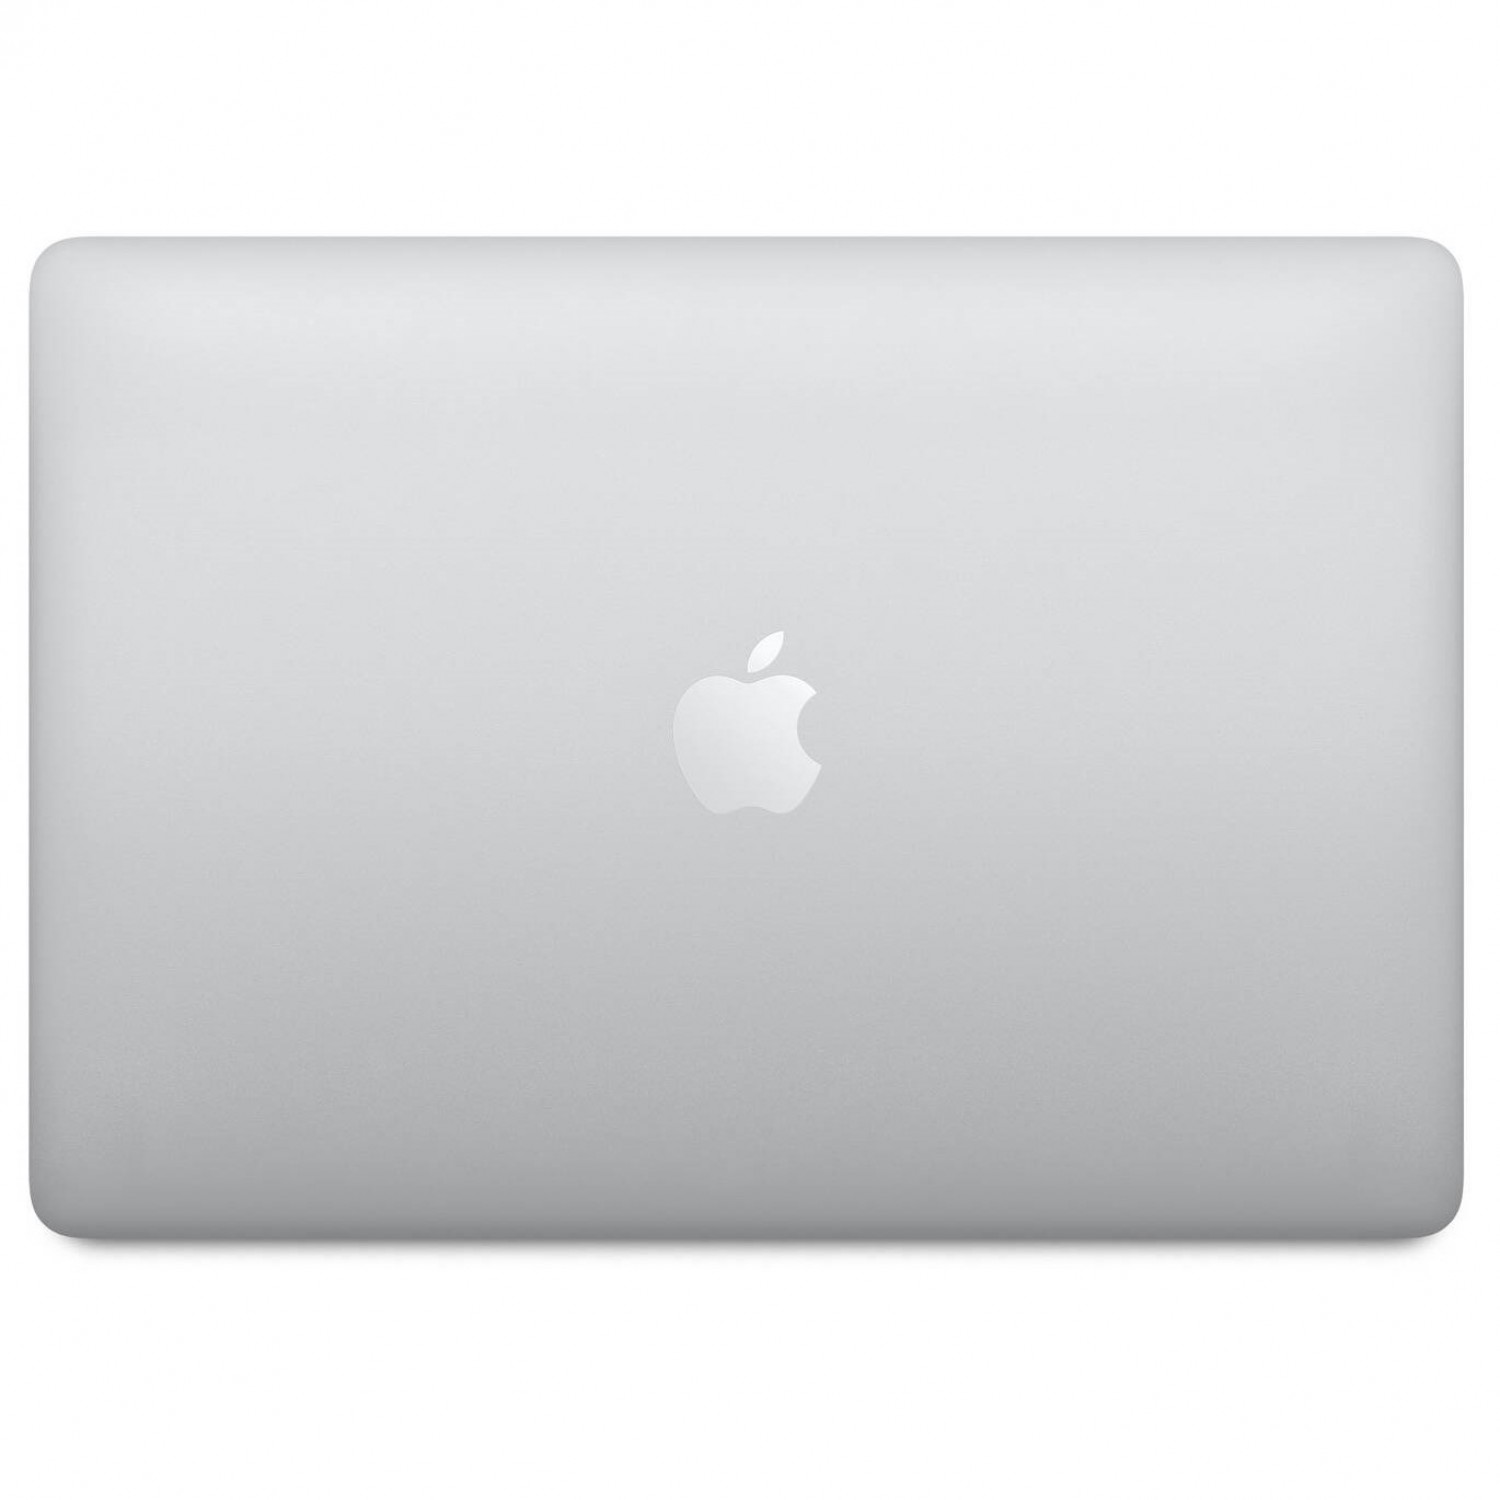 لپ تاپ Apple MacBook Pro 13 2020 CTO - Silver - F-5